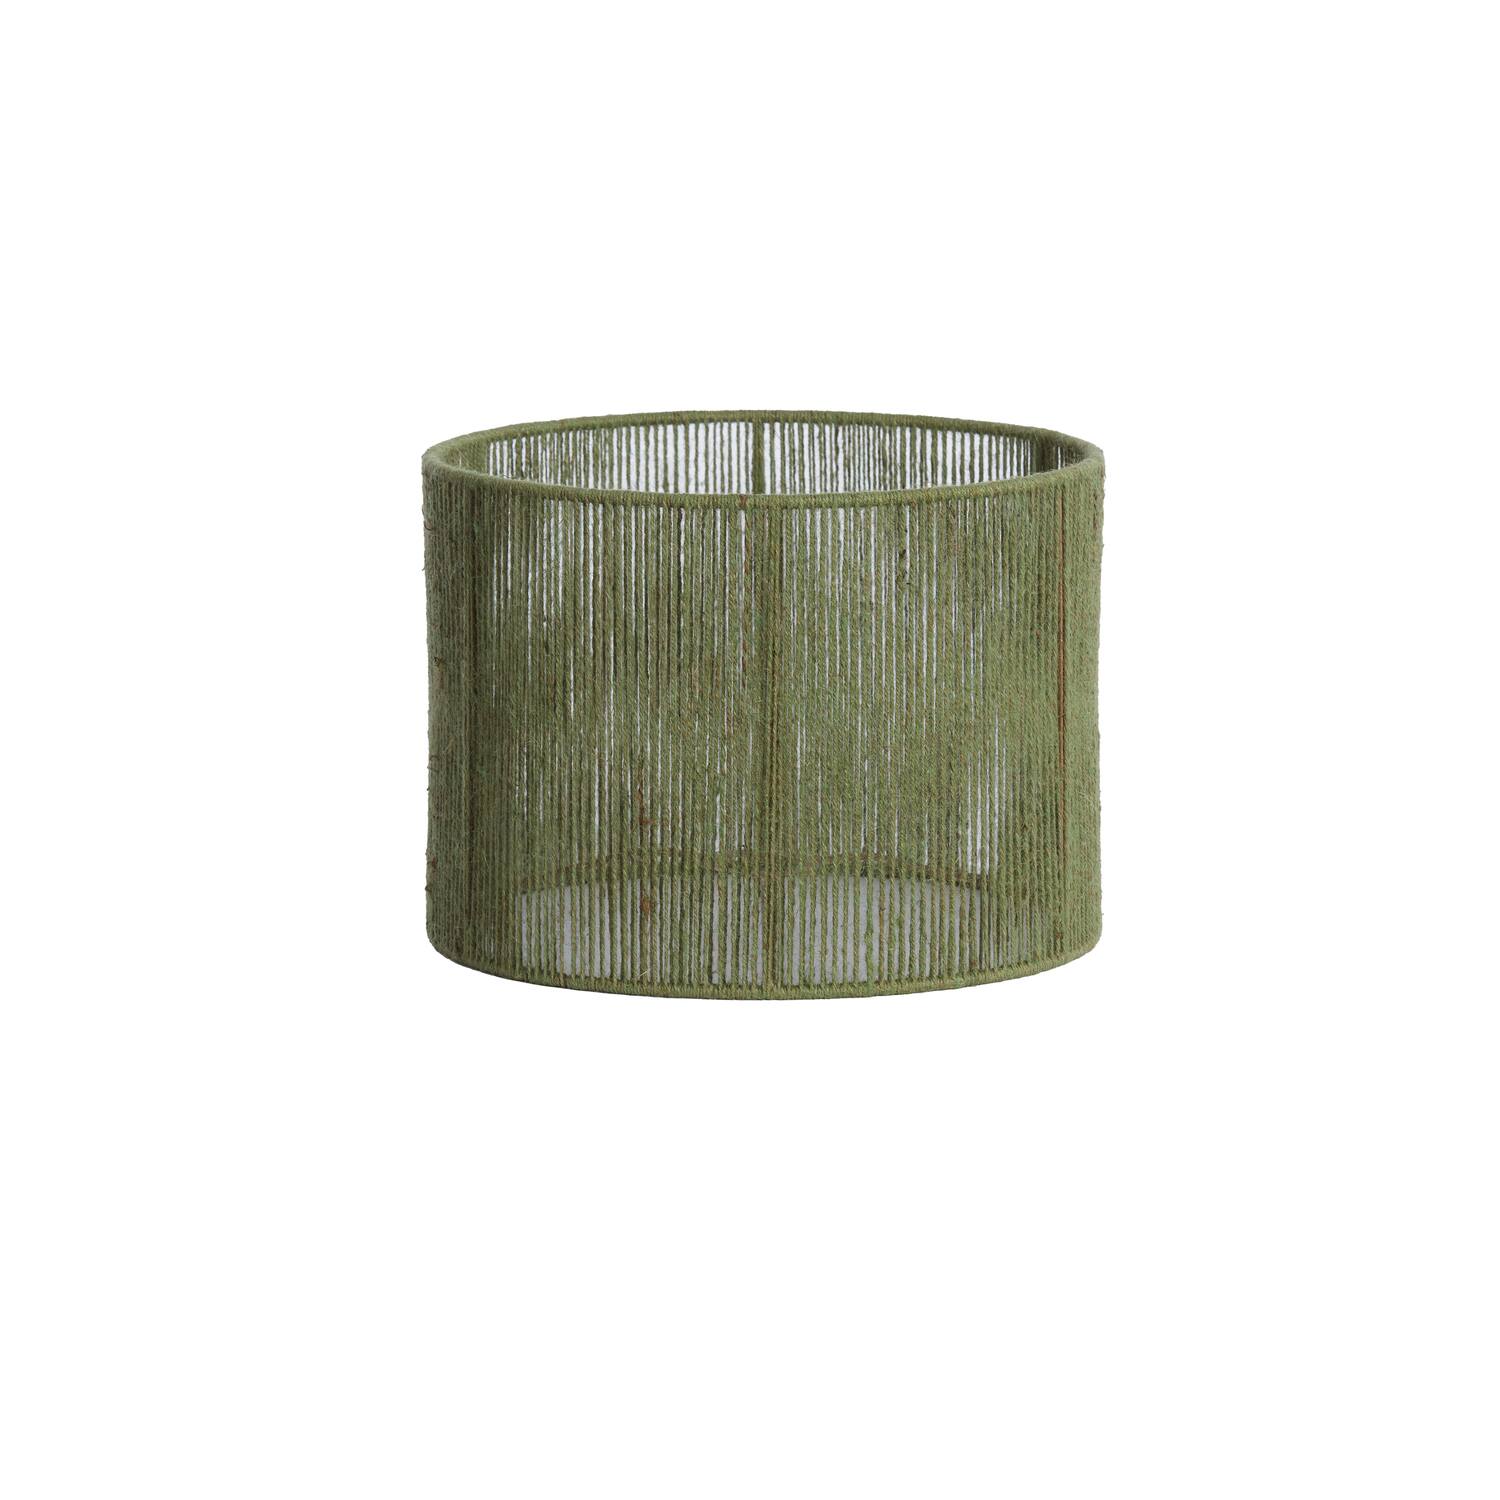 Shade cylinder 40-40-30 cm TOSSA jute green